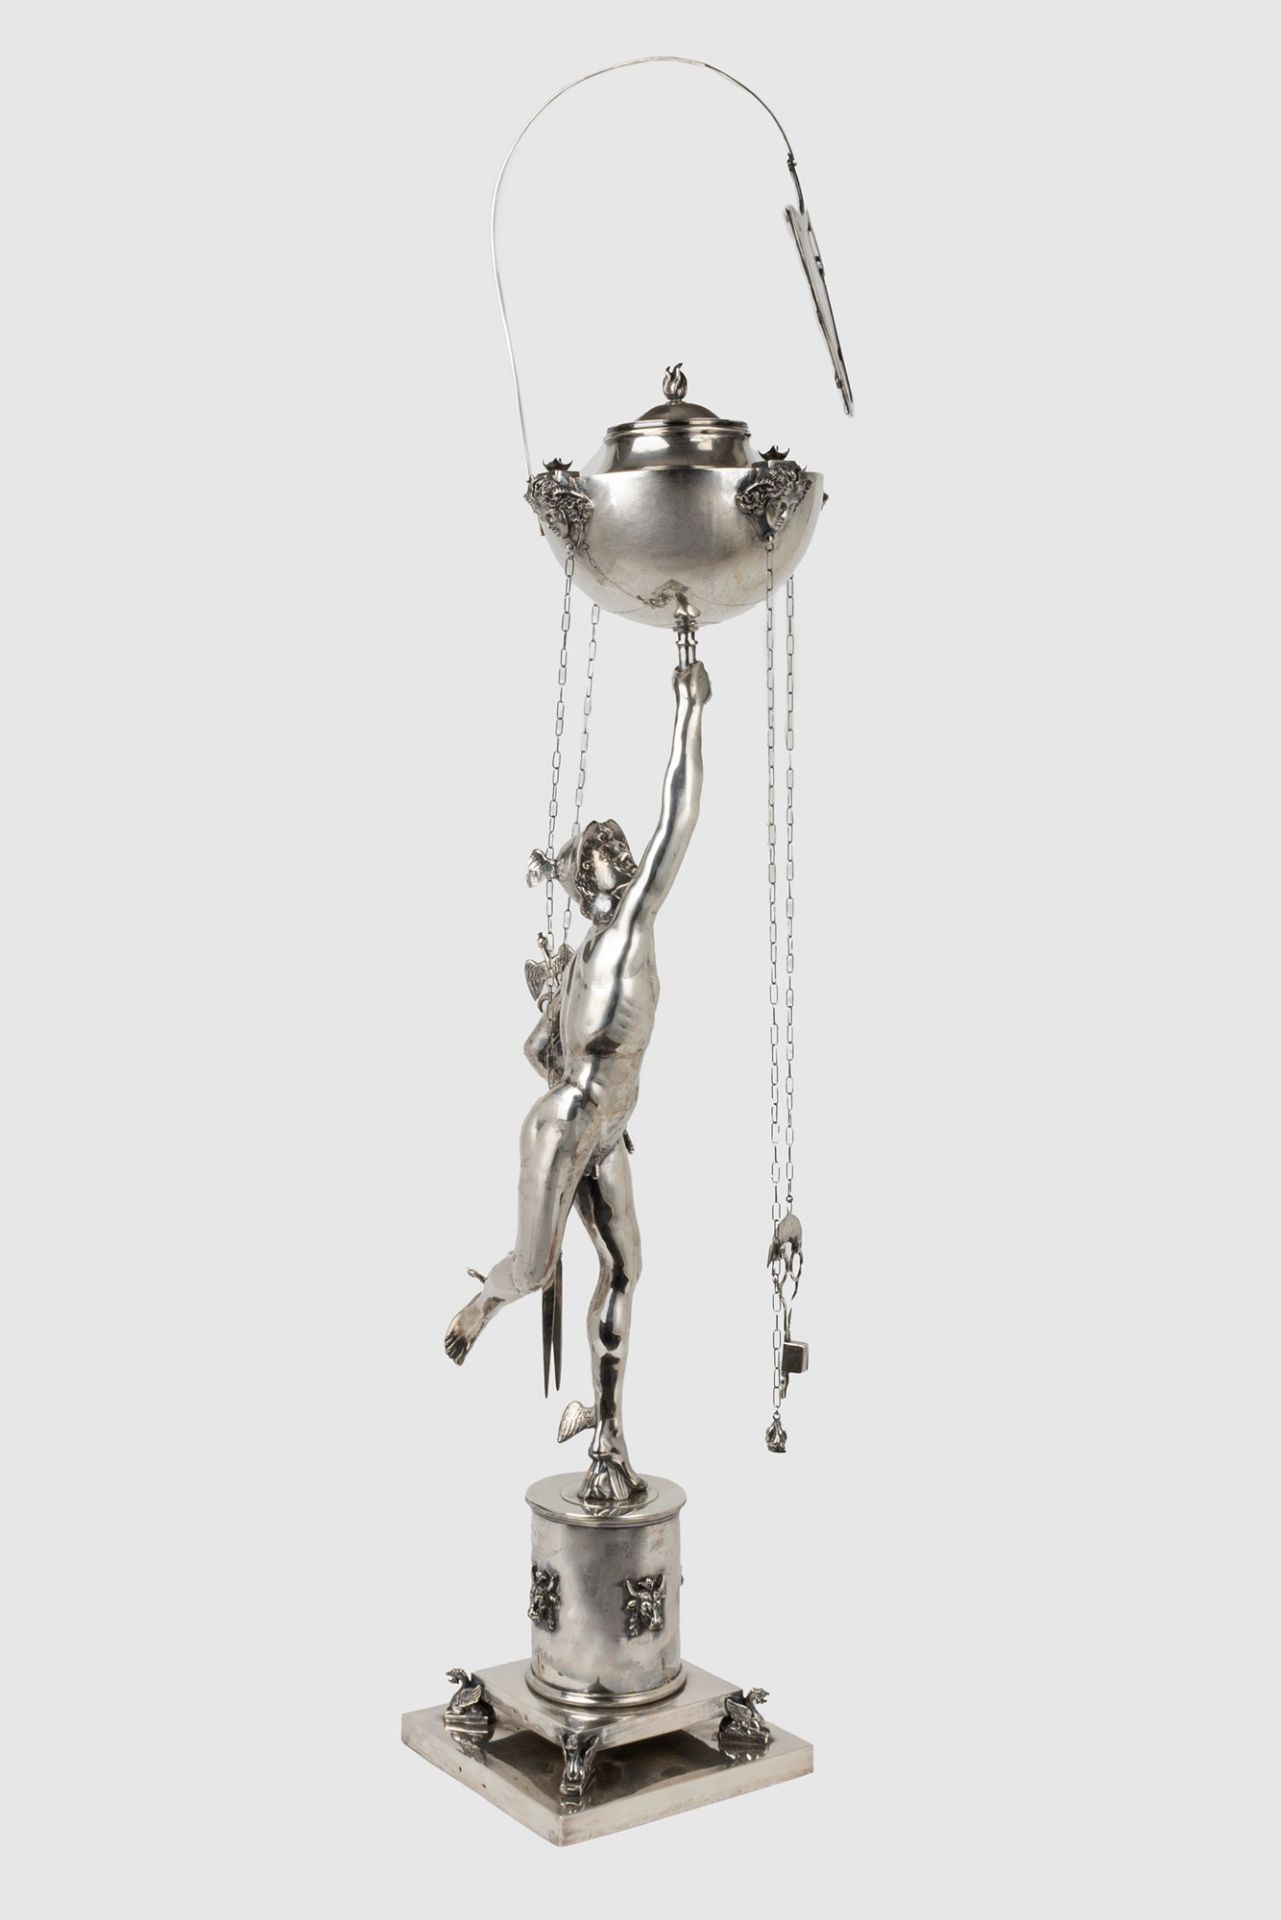 Roman silver oil lamp representing Mercury, by Giambologna, 20th century